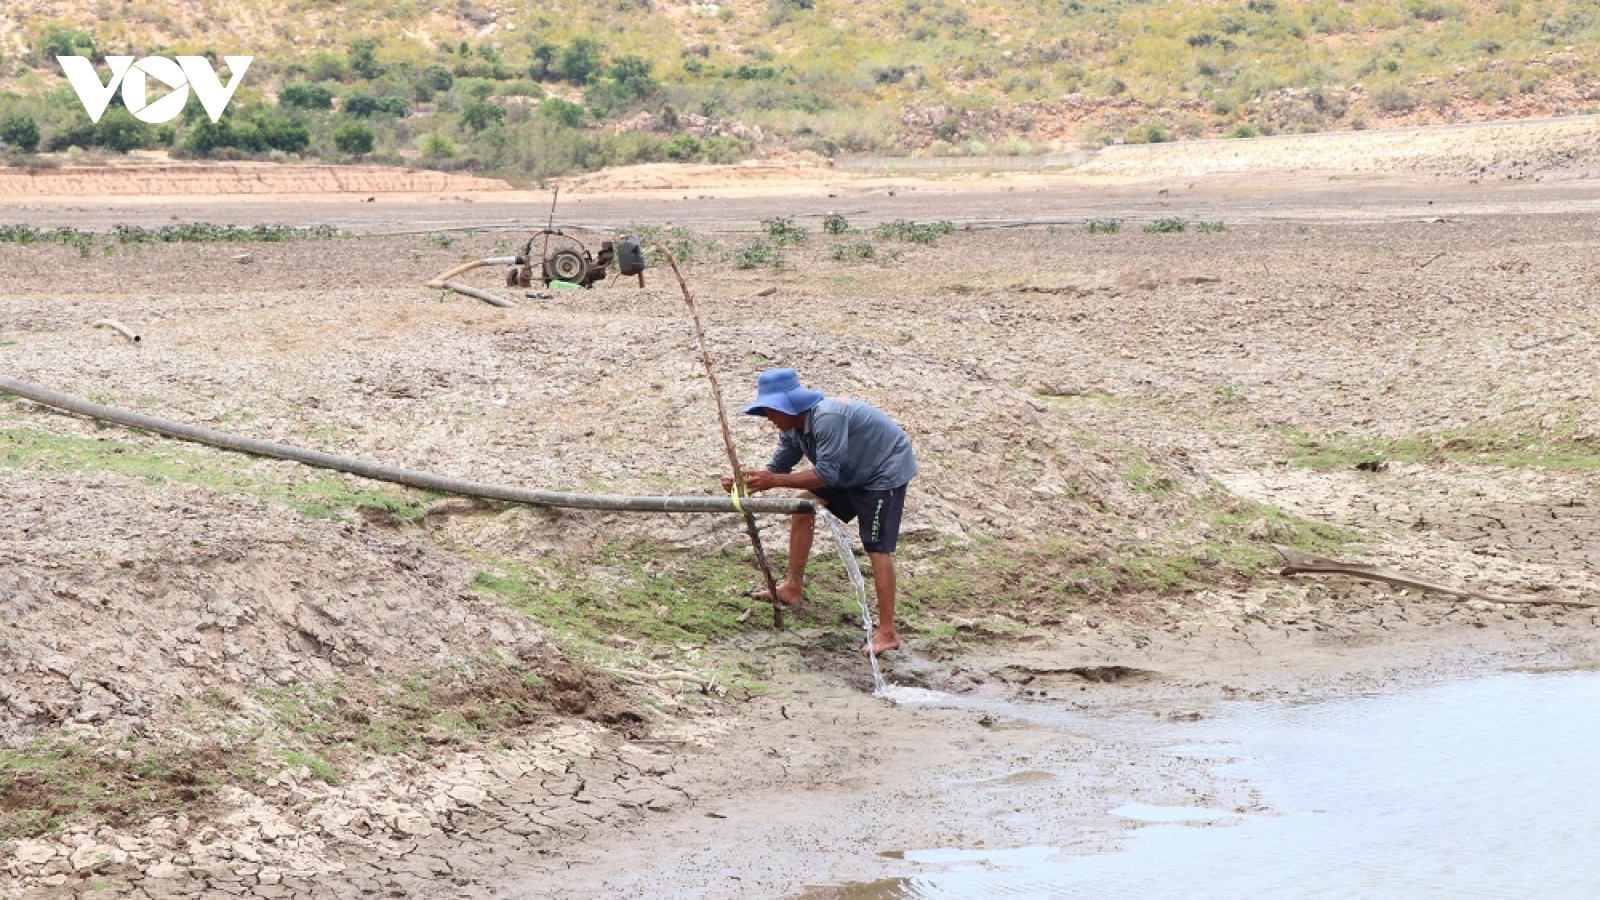 Nhiều hồ trơ đáy, Ninh Thuận có nguy cơ thiếu nước khi nắng nóng còn kéo dài